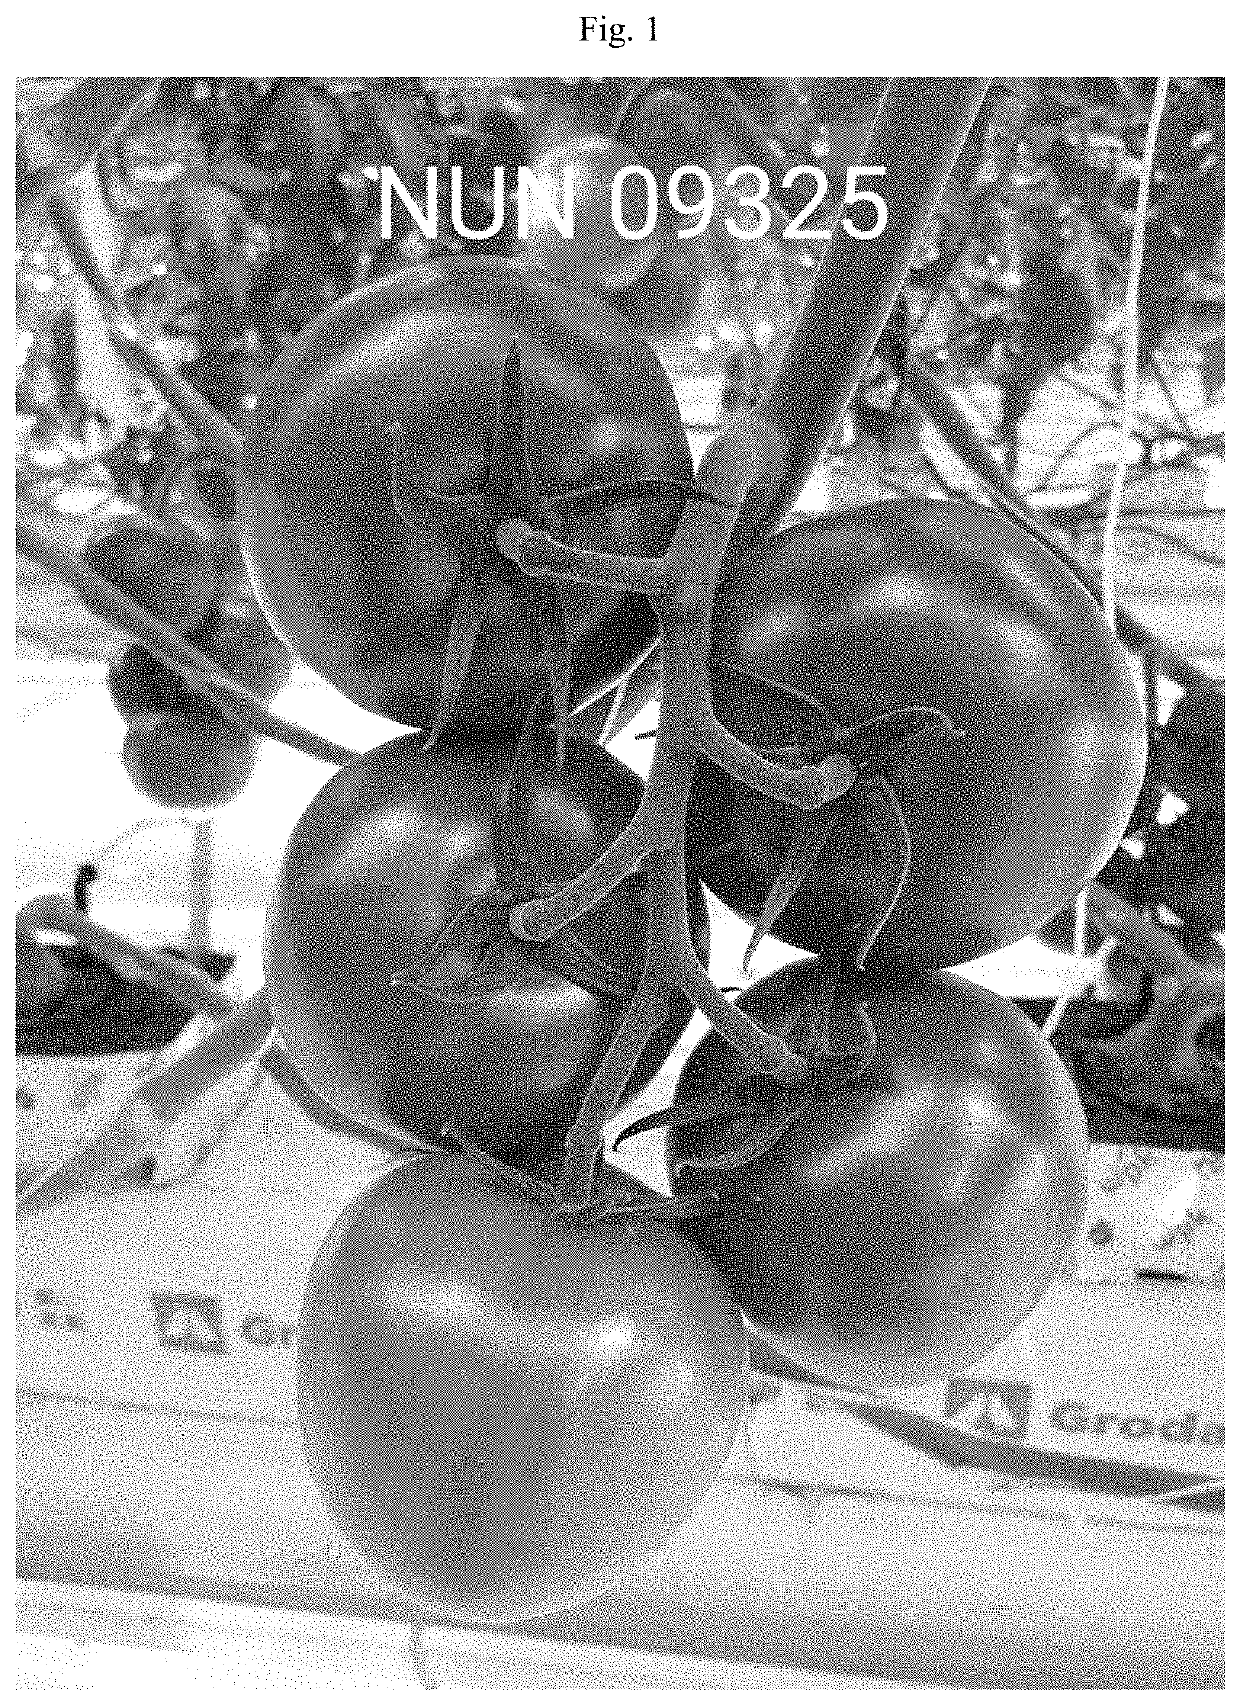 Tomato variety nun 09325 tof